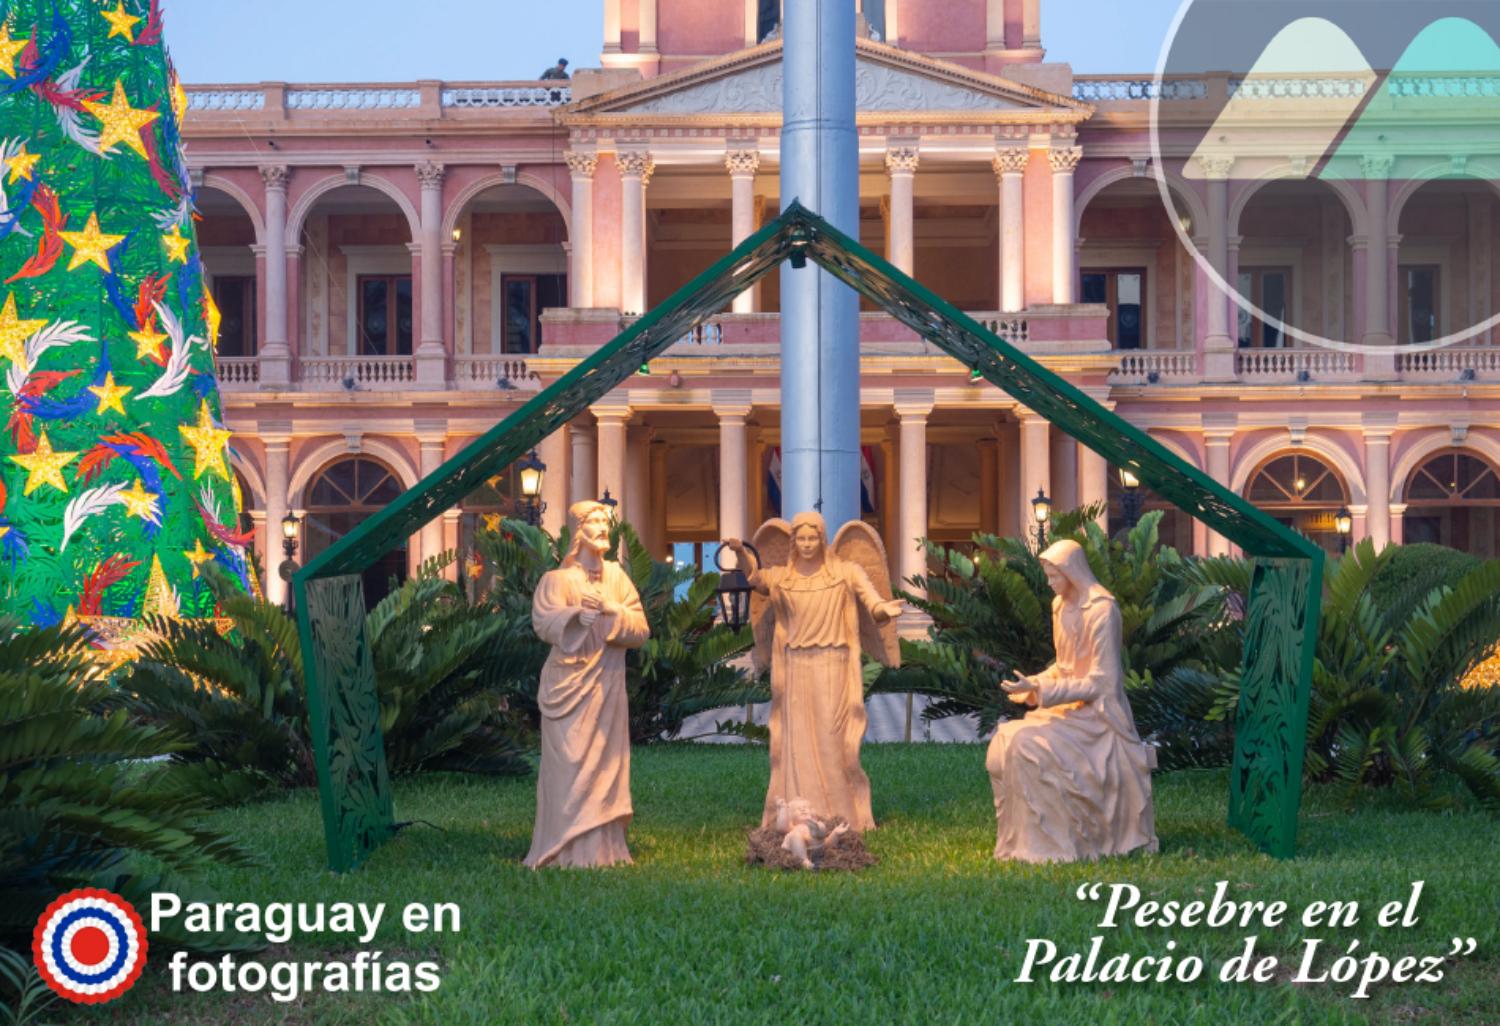 PARAGUAY EN FOTOGRAFÍAS, PESEBRE EN EL PALACIO DE LÓPEZ